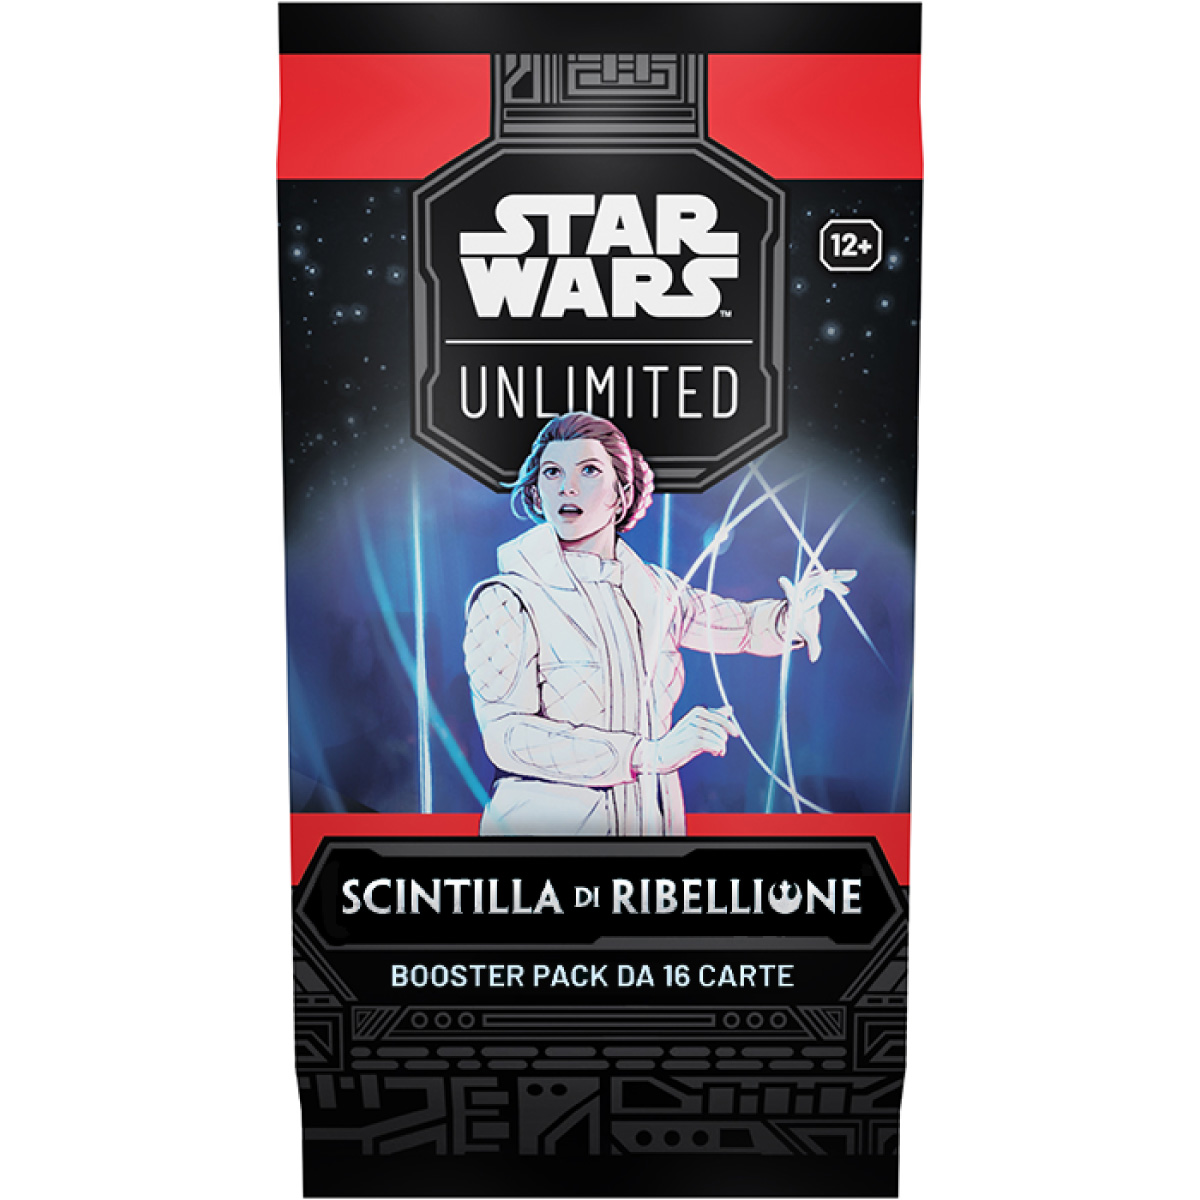 star wars unlimited - scintilla di ribellione - case sigillato 6x box 24 buste (ita)